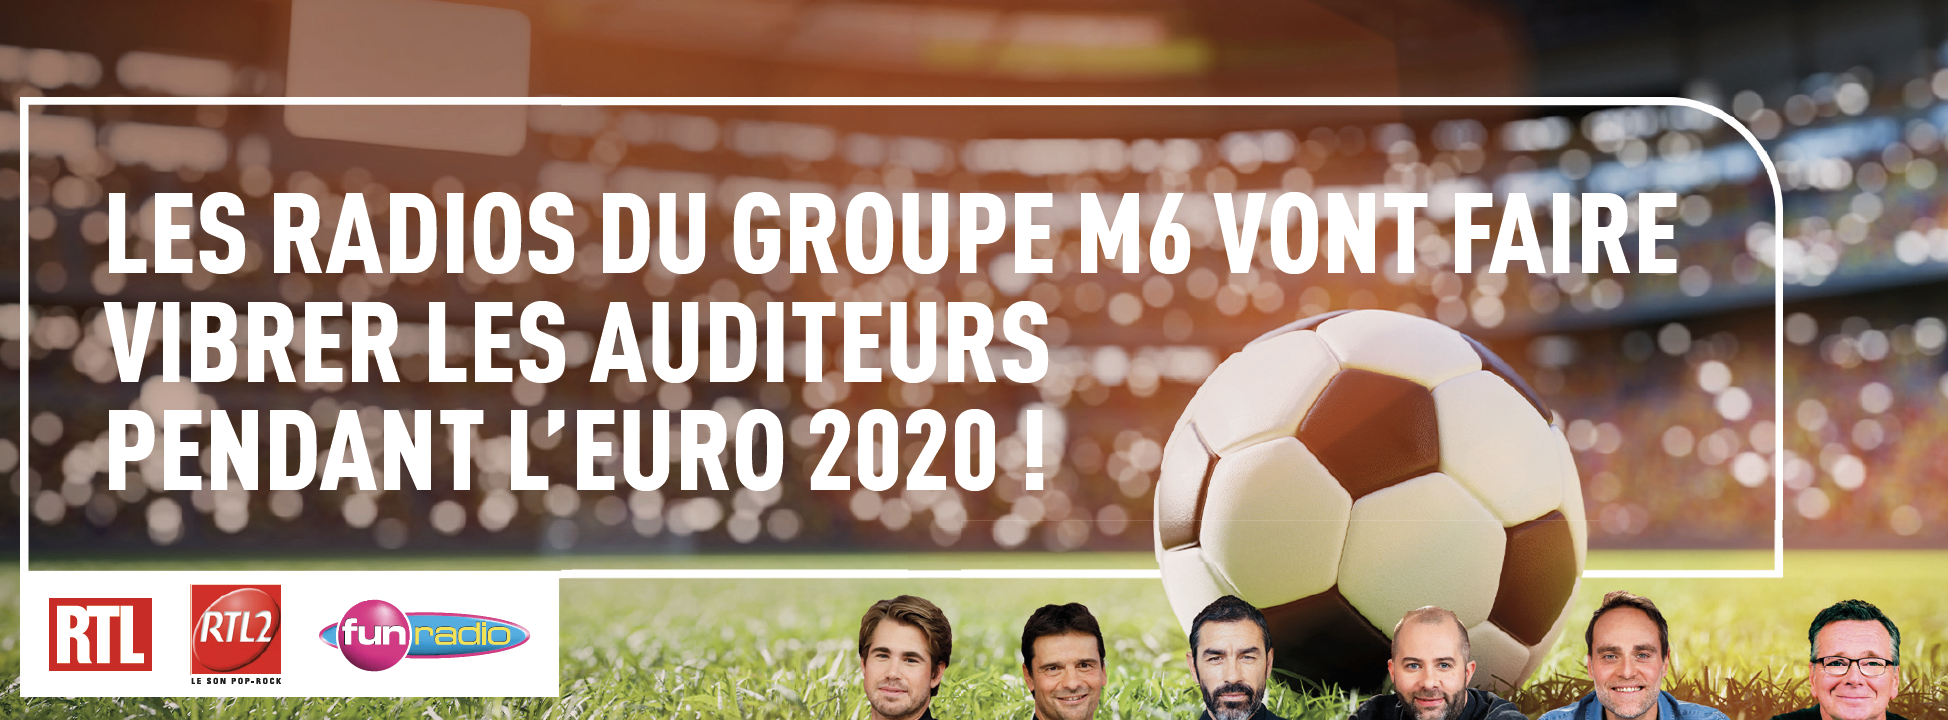 Euro 2020 : les radios du groupe M6 vont faire vibrer les auditeurs